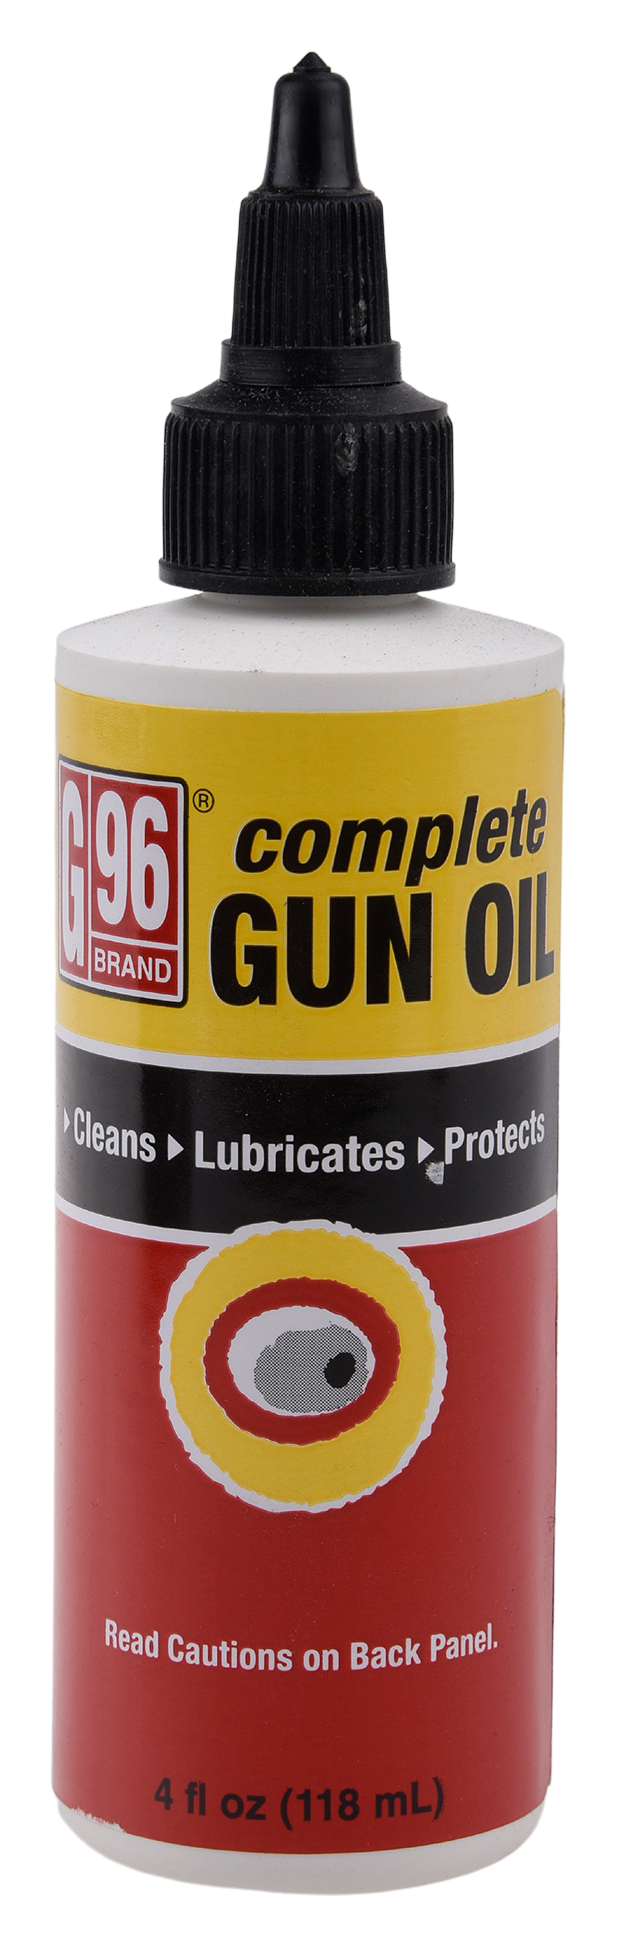 G96 Complete Gun Oil